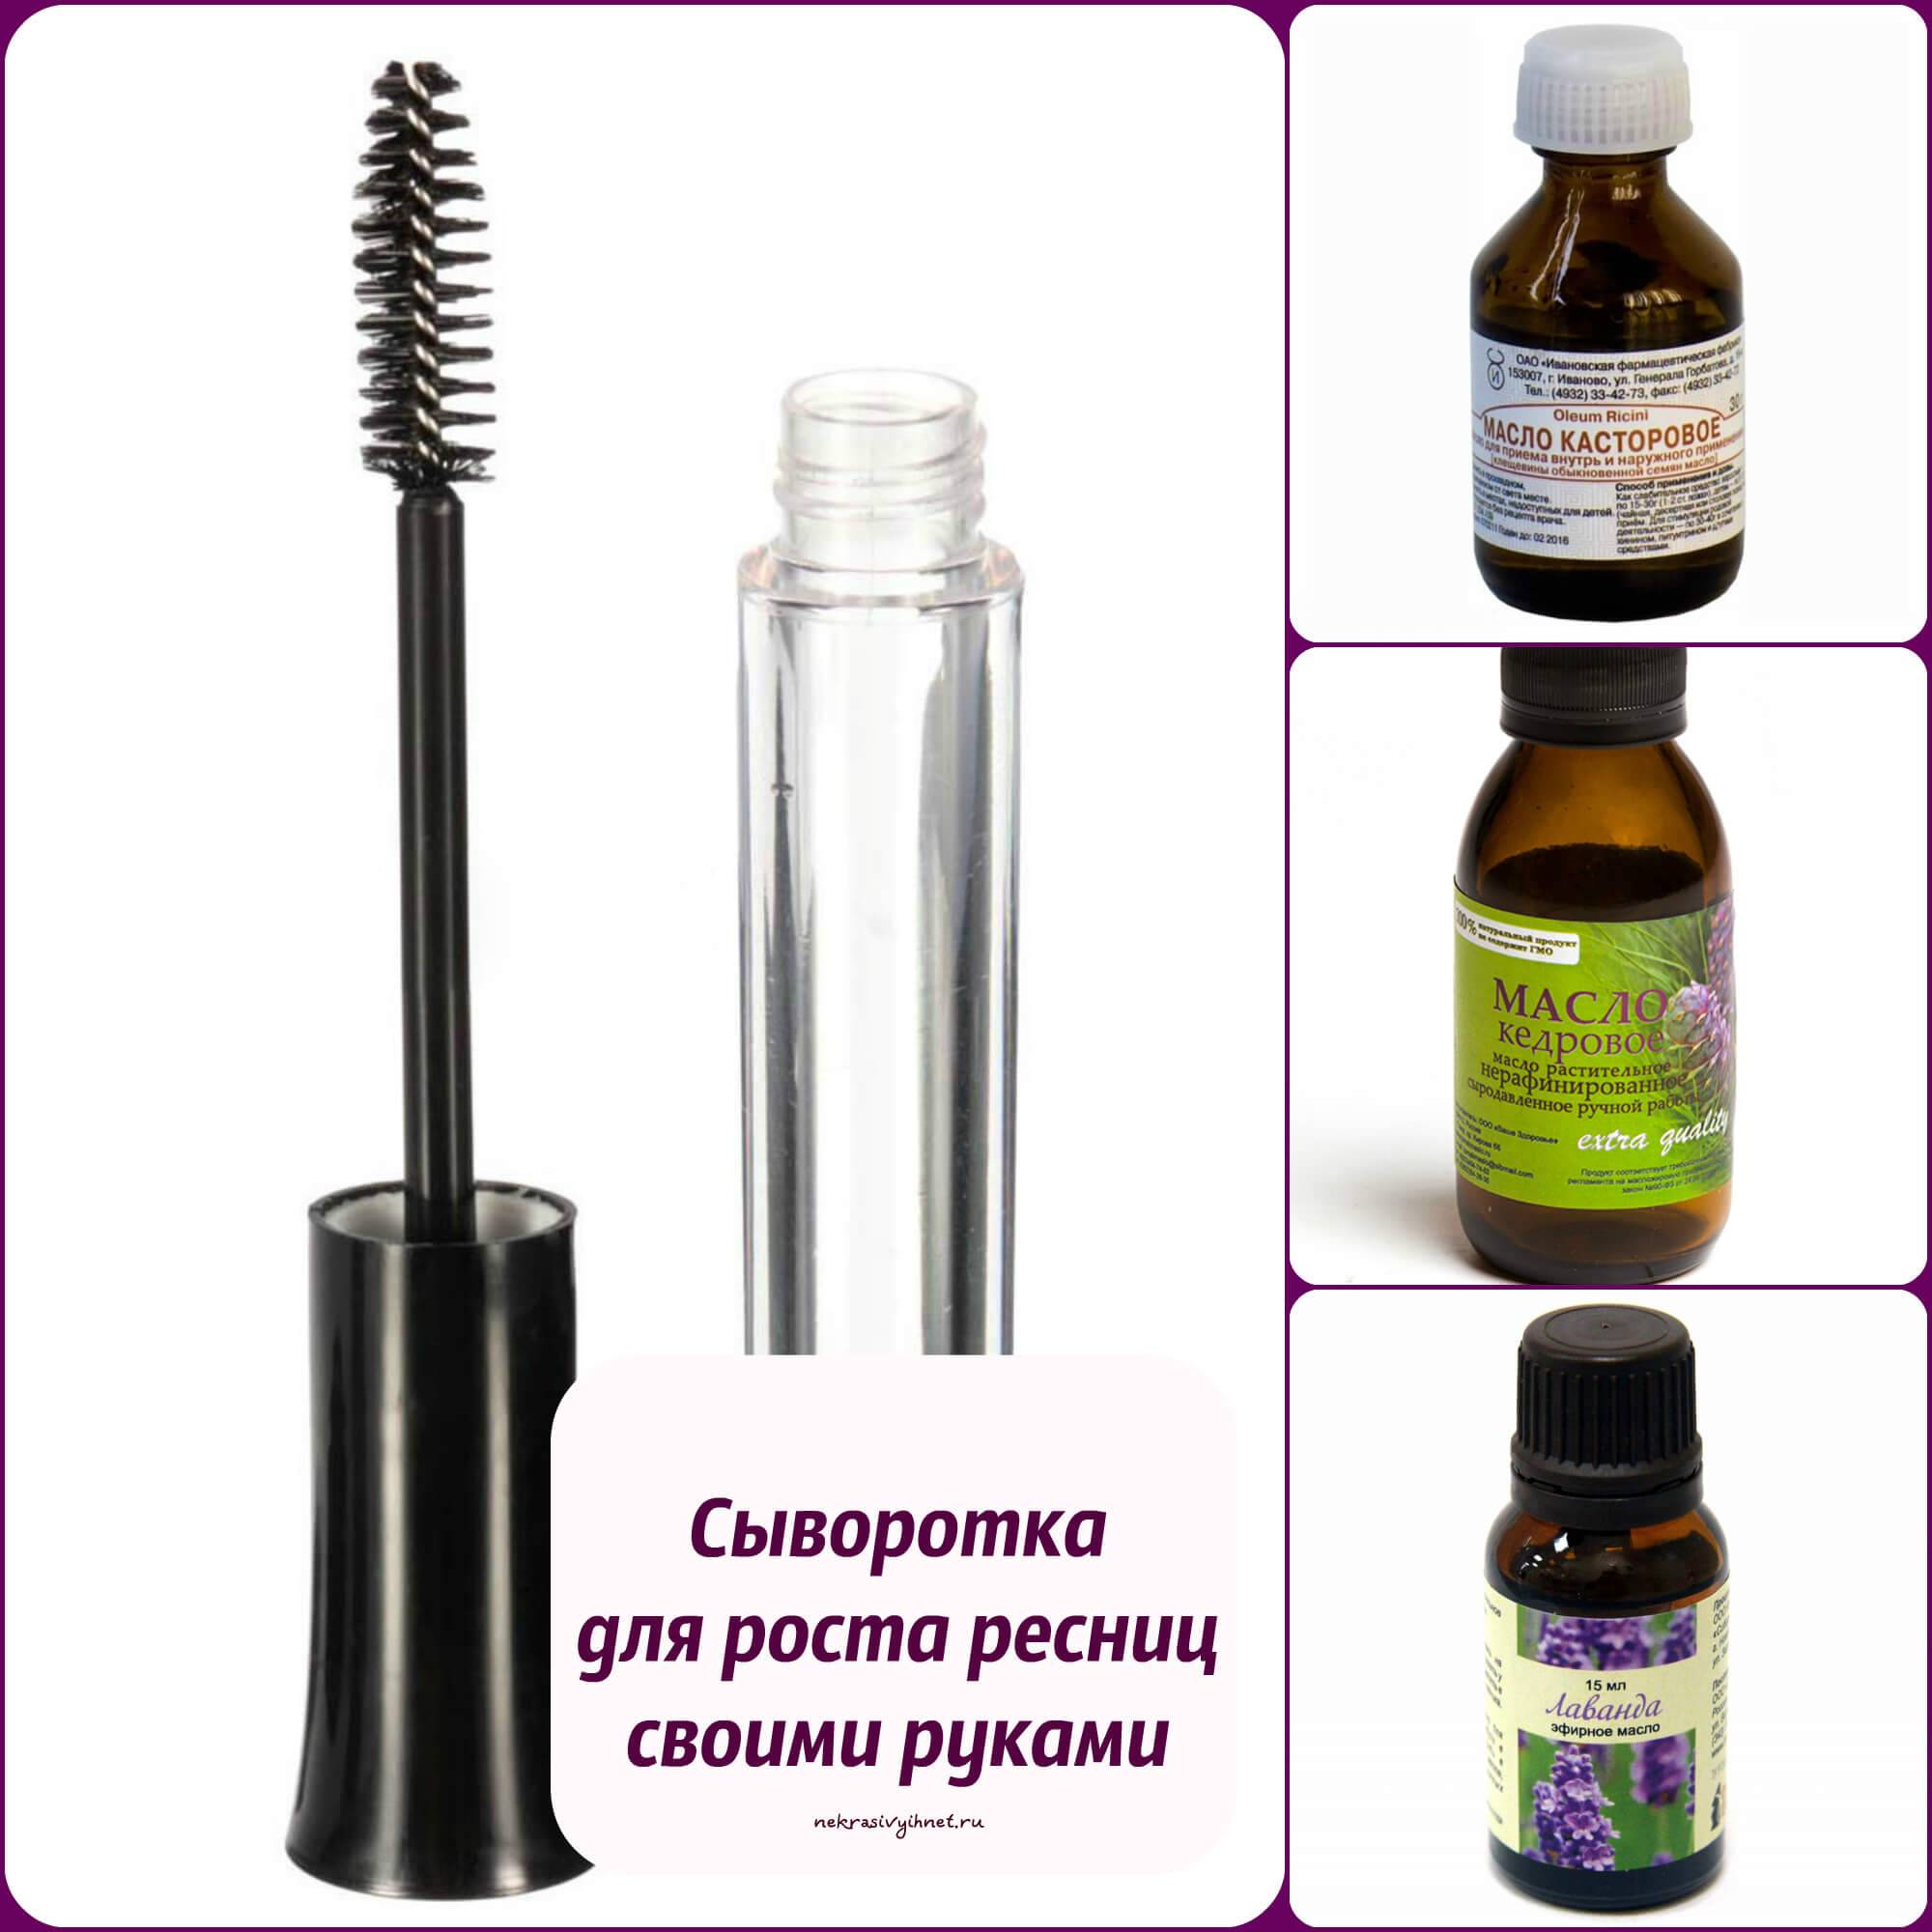 Касторовое масло для волос применение в домашних условиях